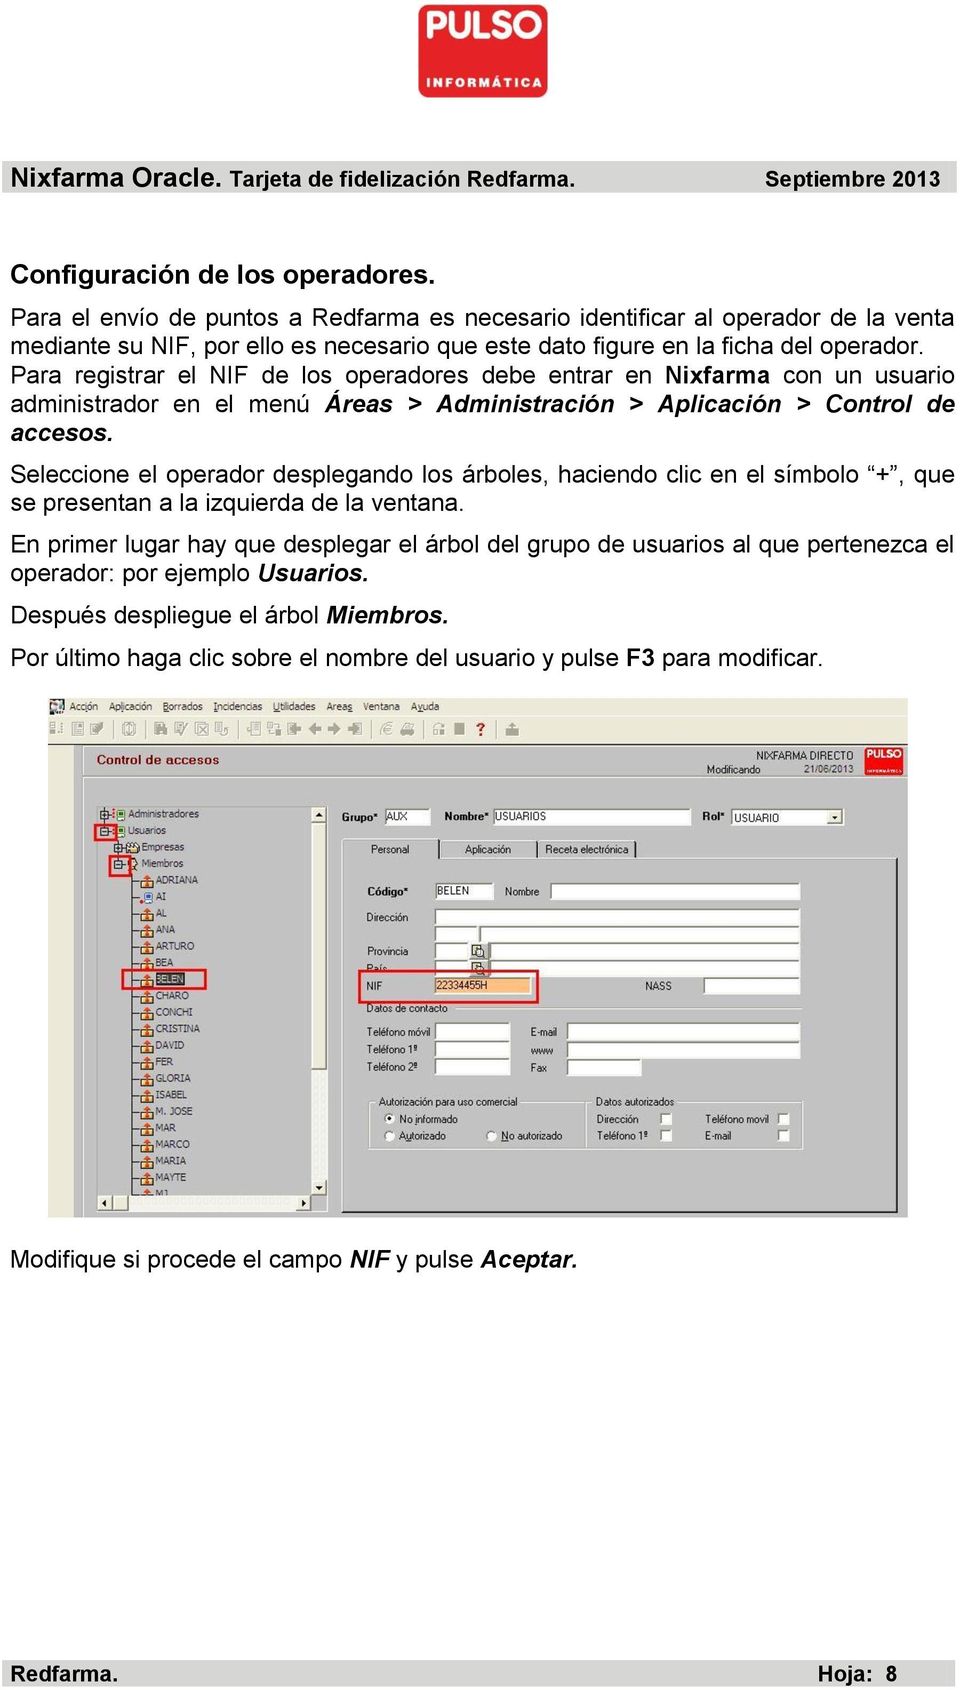 Para registrar el NIF de los operadores debe entrar en Nixfarma con un usuario administrador en el menú Áreas > Administración > Aplicación > Control de accesos.